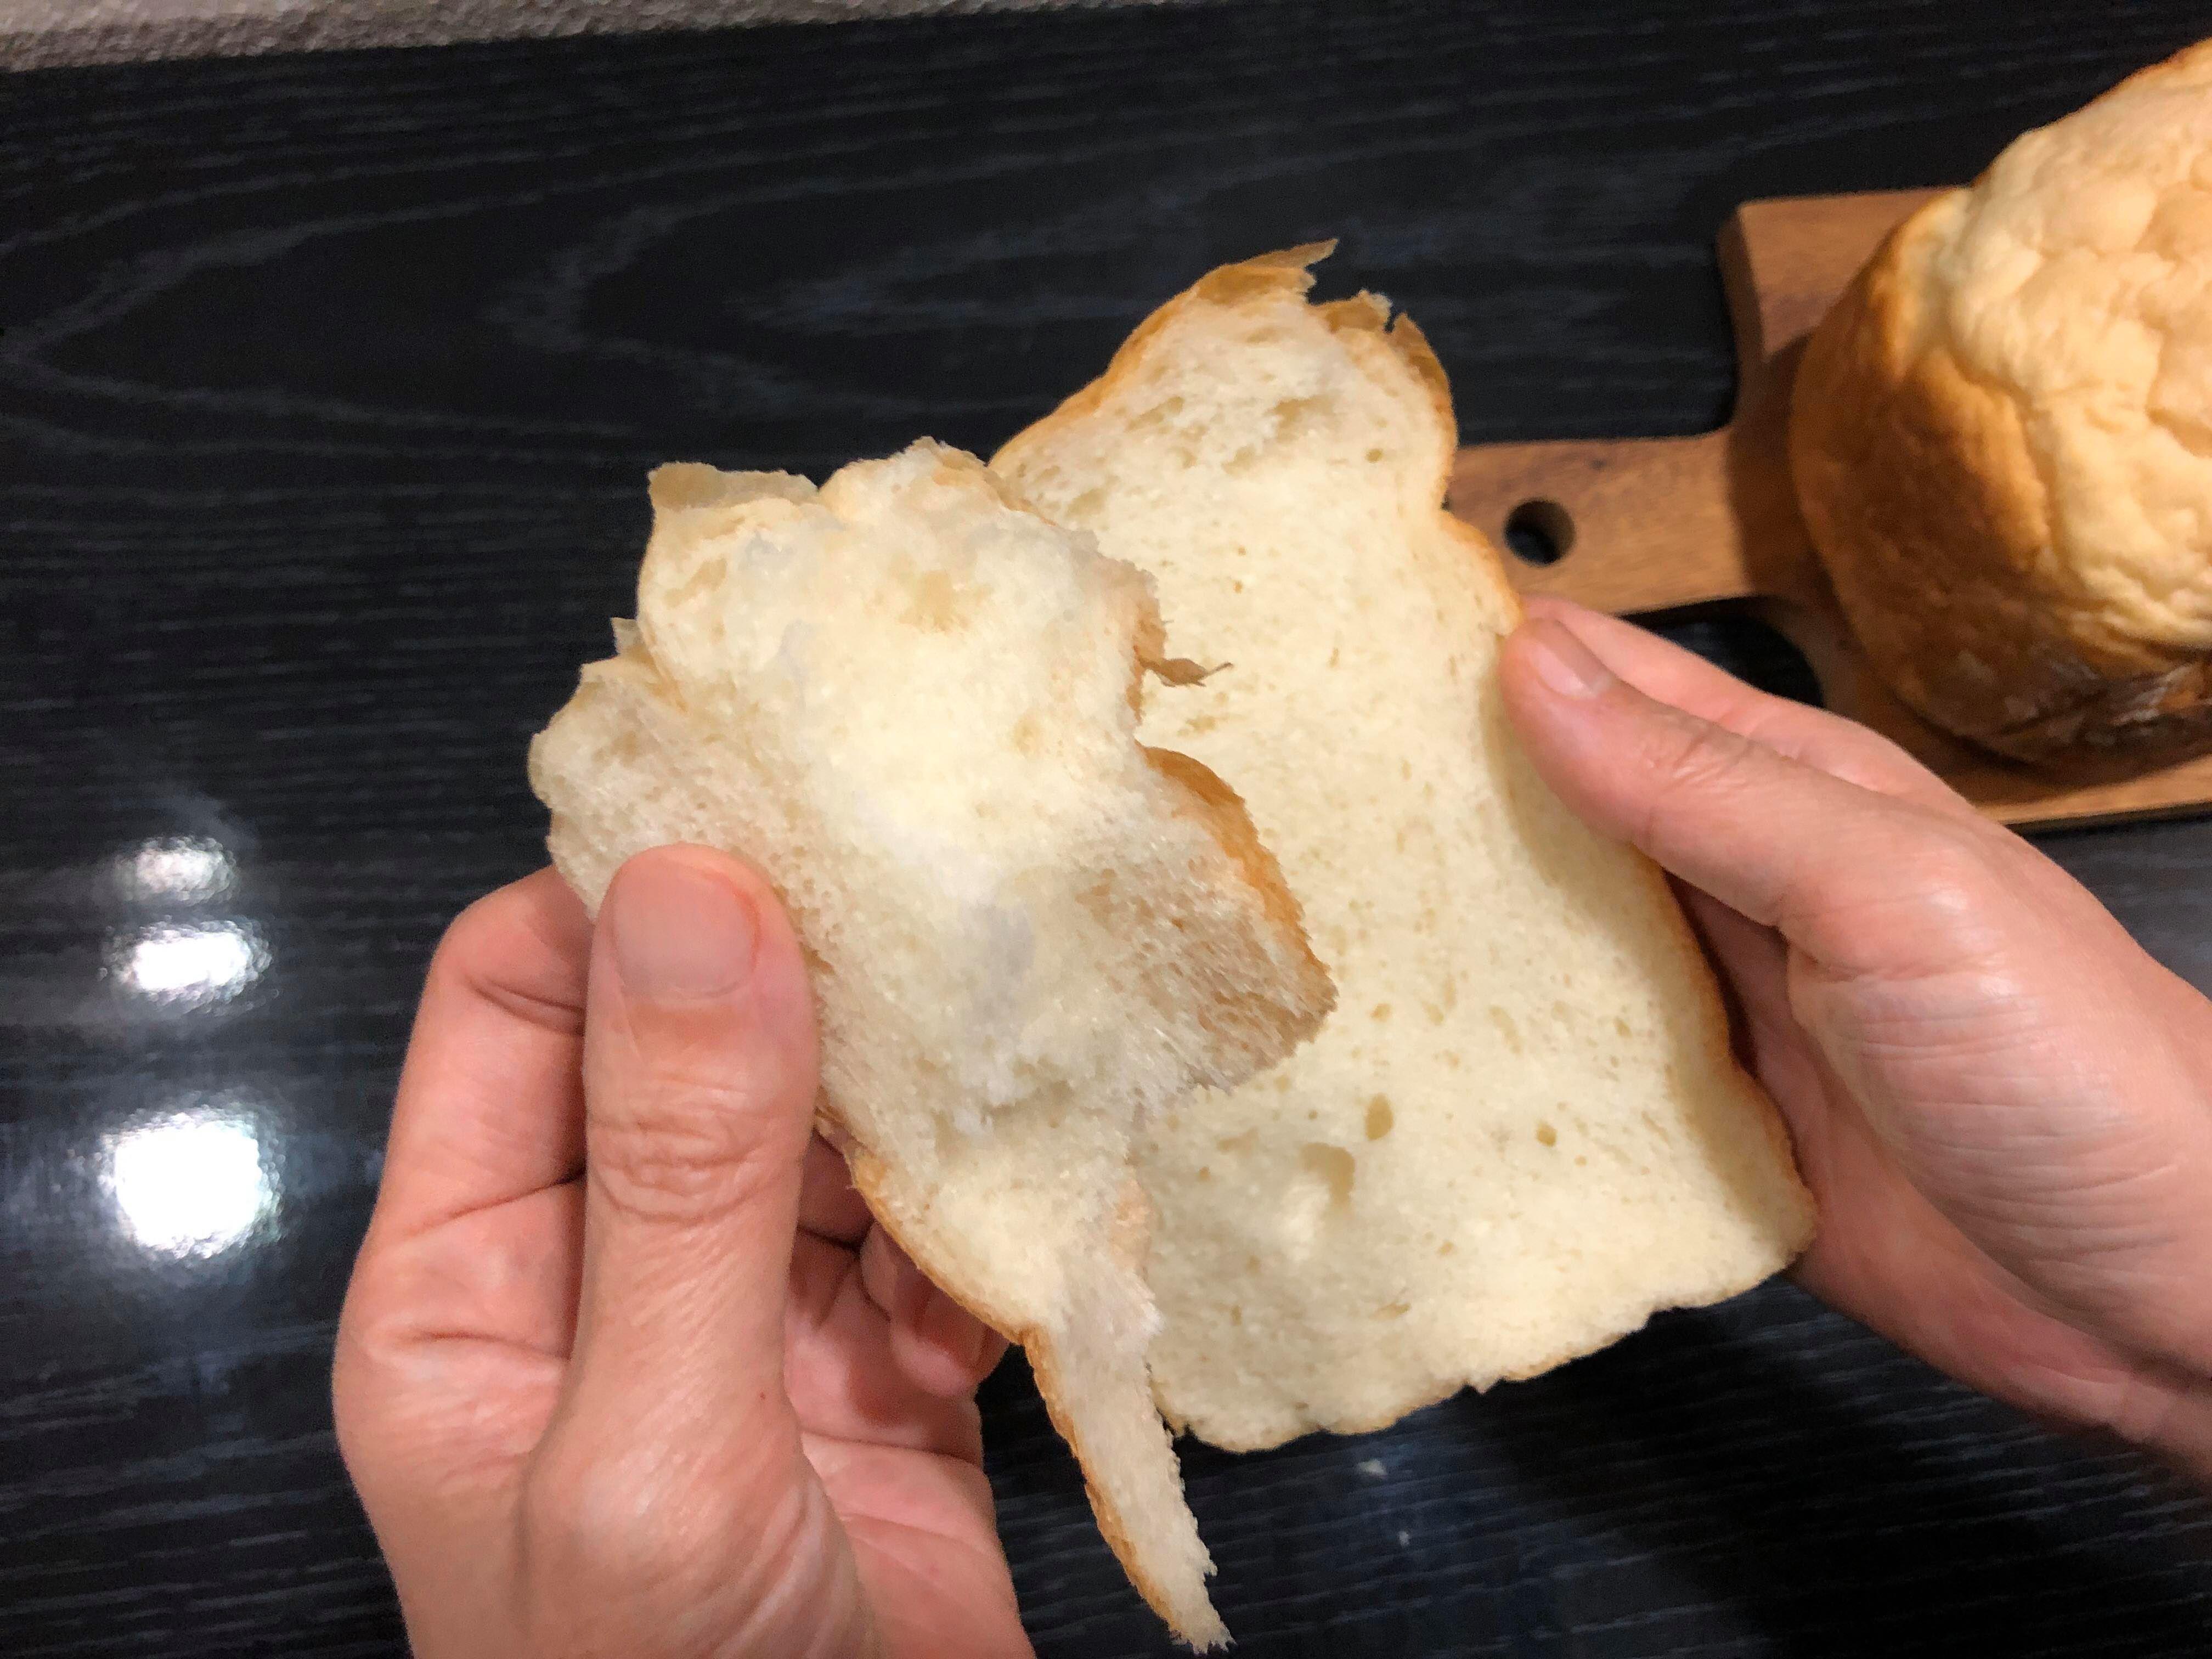 Panasonicのホームベーカリー「SD-MDX102」で、生食パンを焼こう